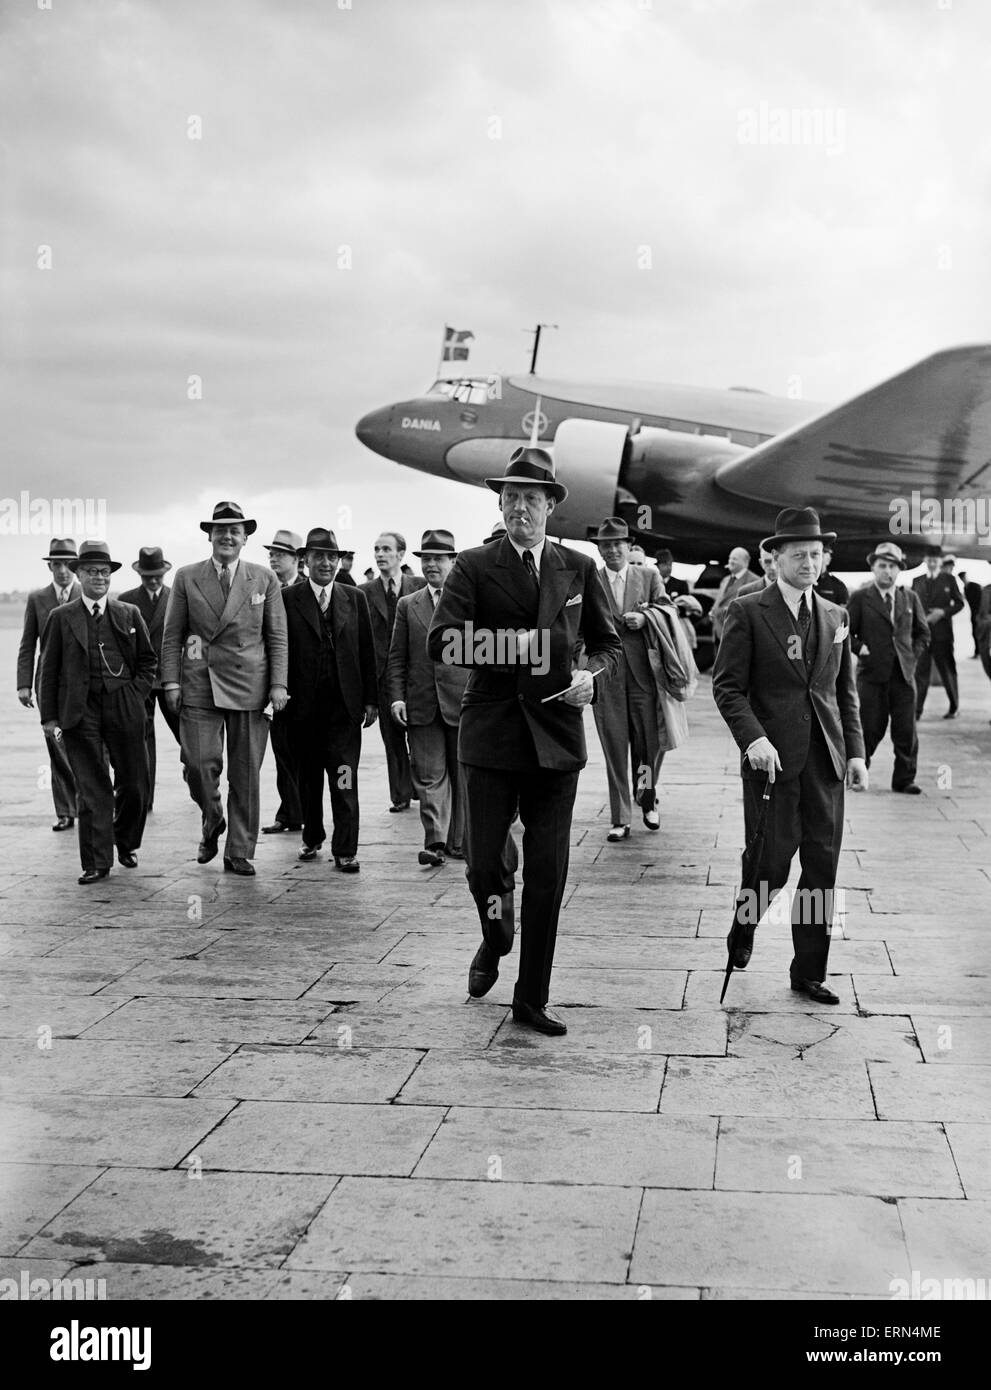 Prinz Axel von Dänemark zu einem offiziellen Besuch DIS begibt sich vom dänischen Luftleitungen Focke-Wulf Fw 200A-0 Condor OY-DAM Dania gesehen hier in Croydon am 28. Juli 1938, nach dem Abschluss des Erstfluges von Kopenhagen nach London. Stockfoto